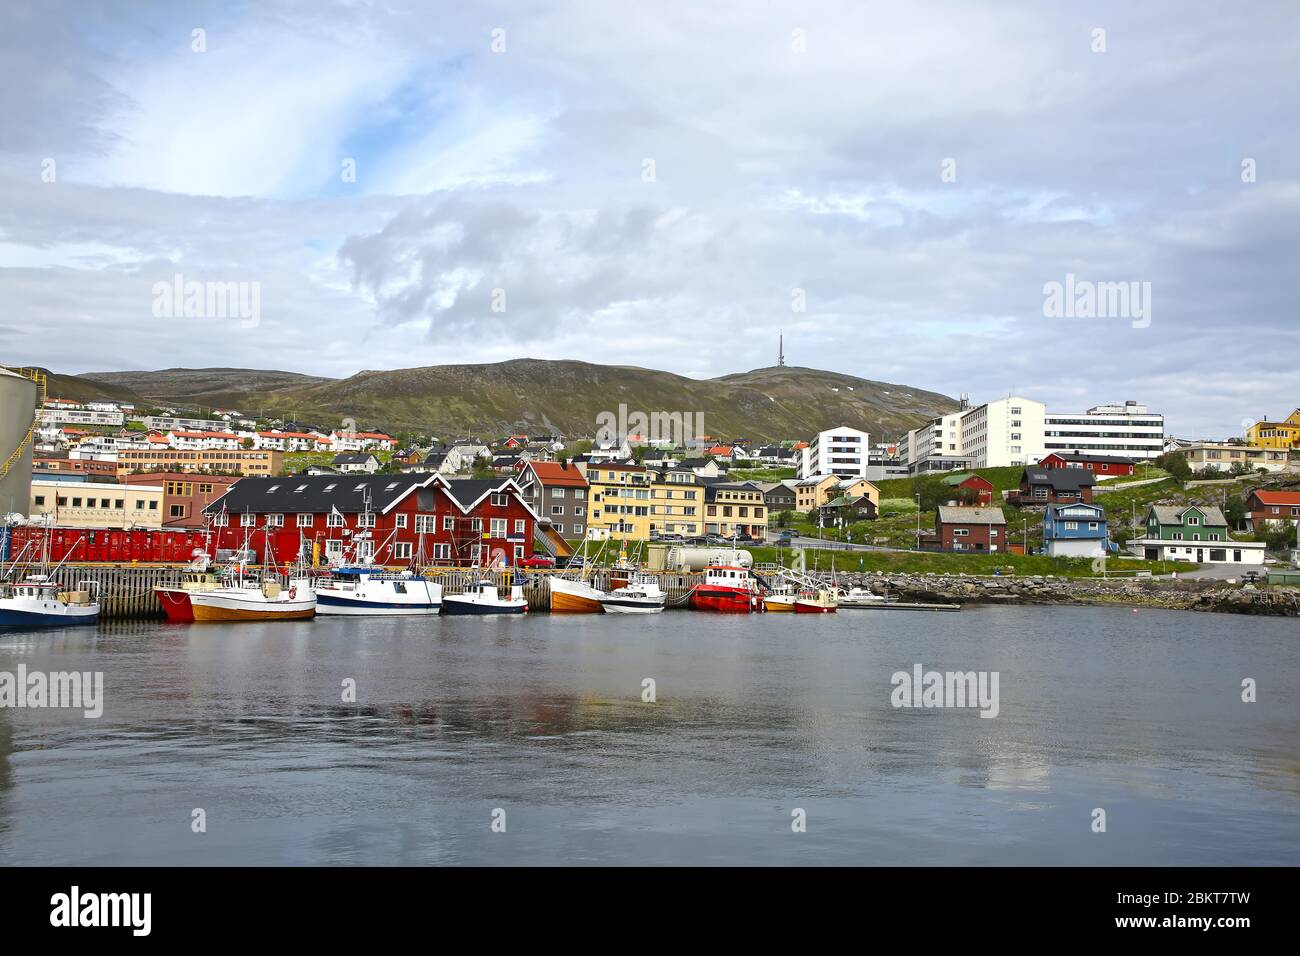 Città di Hammerfest con il porto con le barche da pesca. Hammerfest è la  città più settentrionale del mondo con più di 10,000 abitanti, contea Foto  stock - Alamy